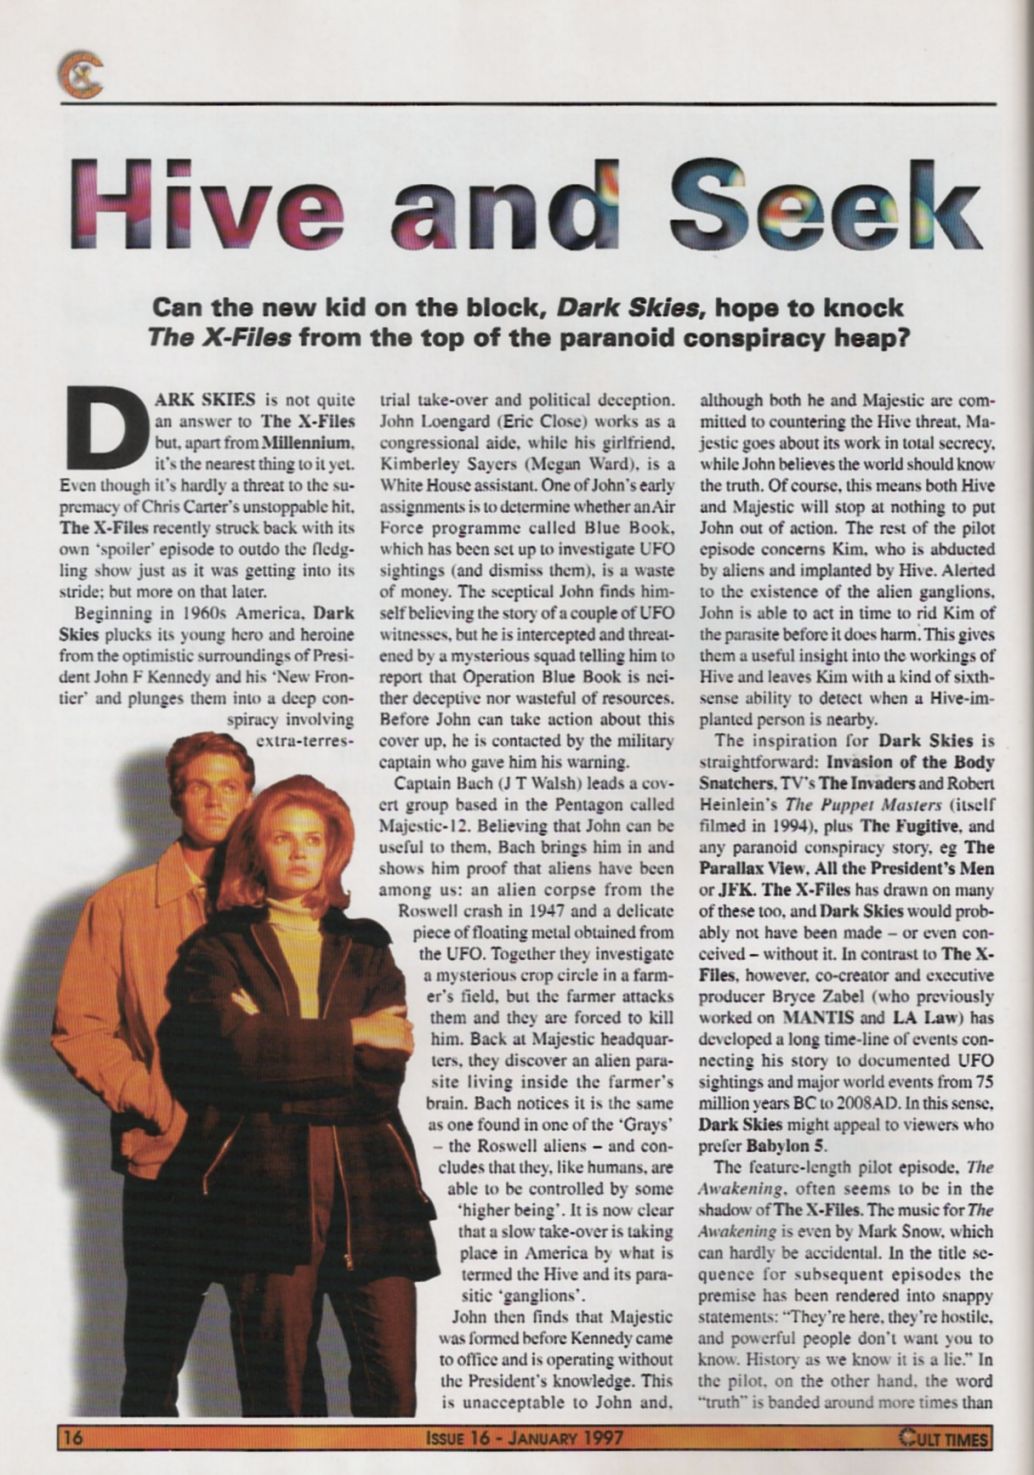 Cult Times #16 - Jan 1997 - Page 1
Keywords: ;dark_skies_media